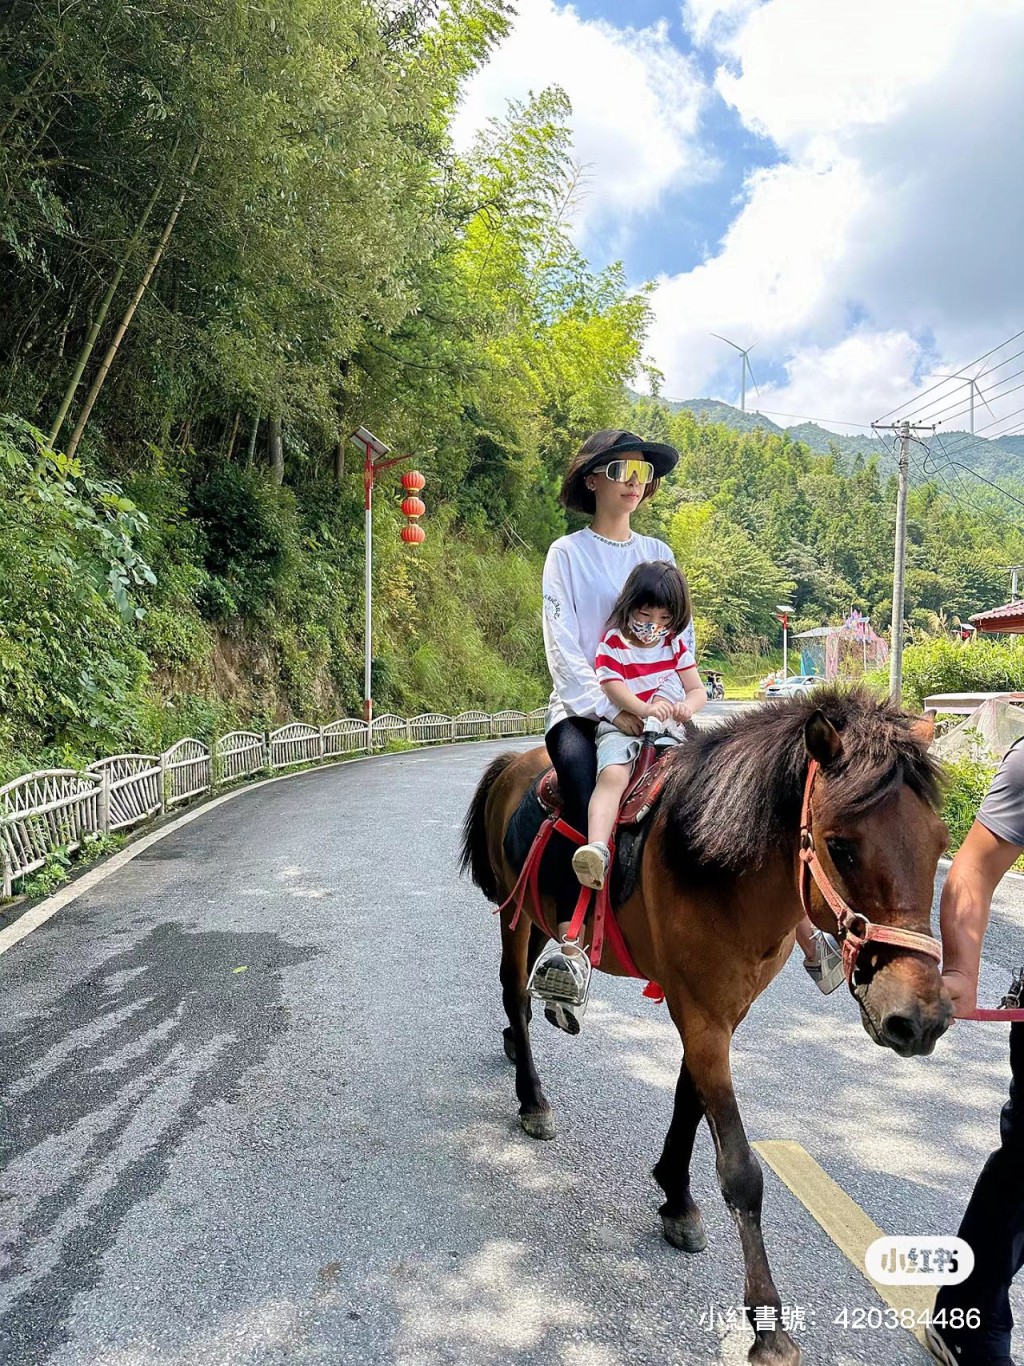 齊嬌與3歲細女Tylia一同體驗騎馬的樂趣。